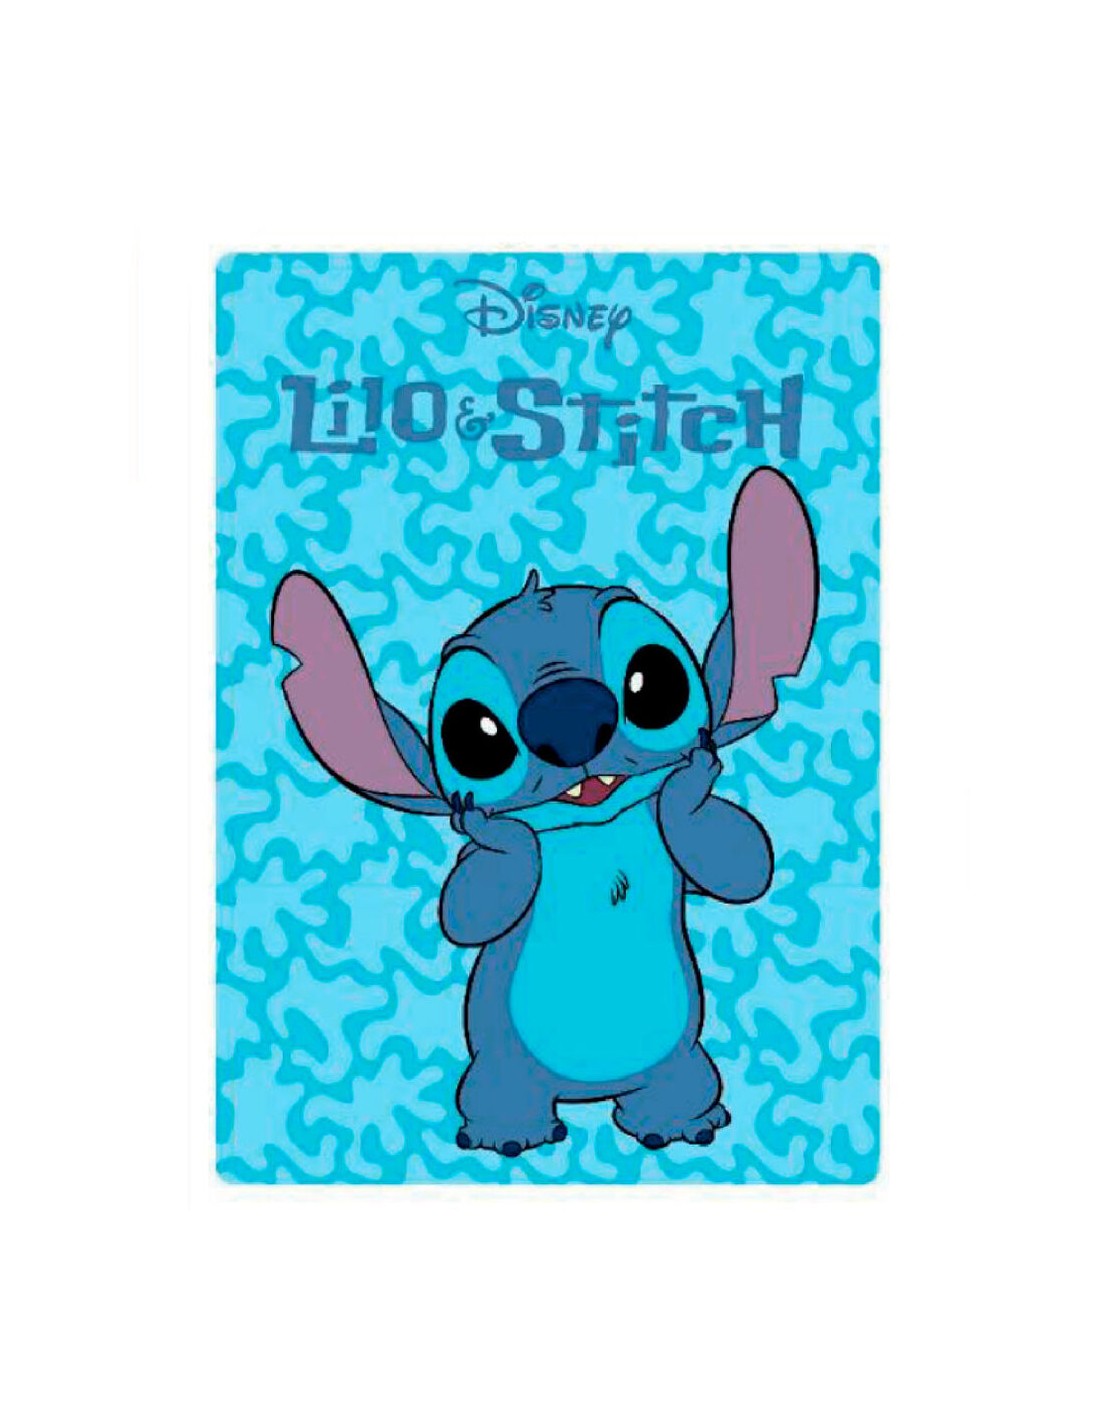 Manta de Lilo y Stitch de Disney